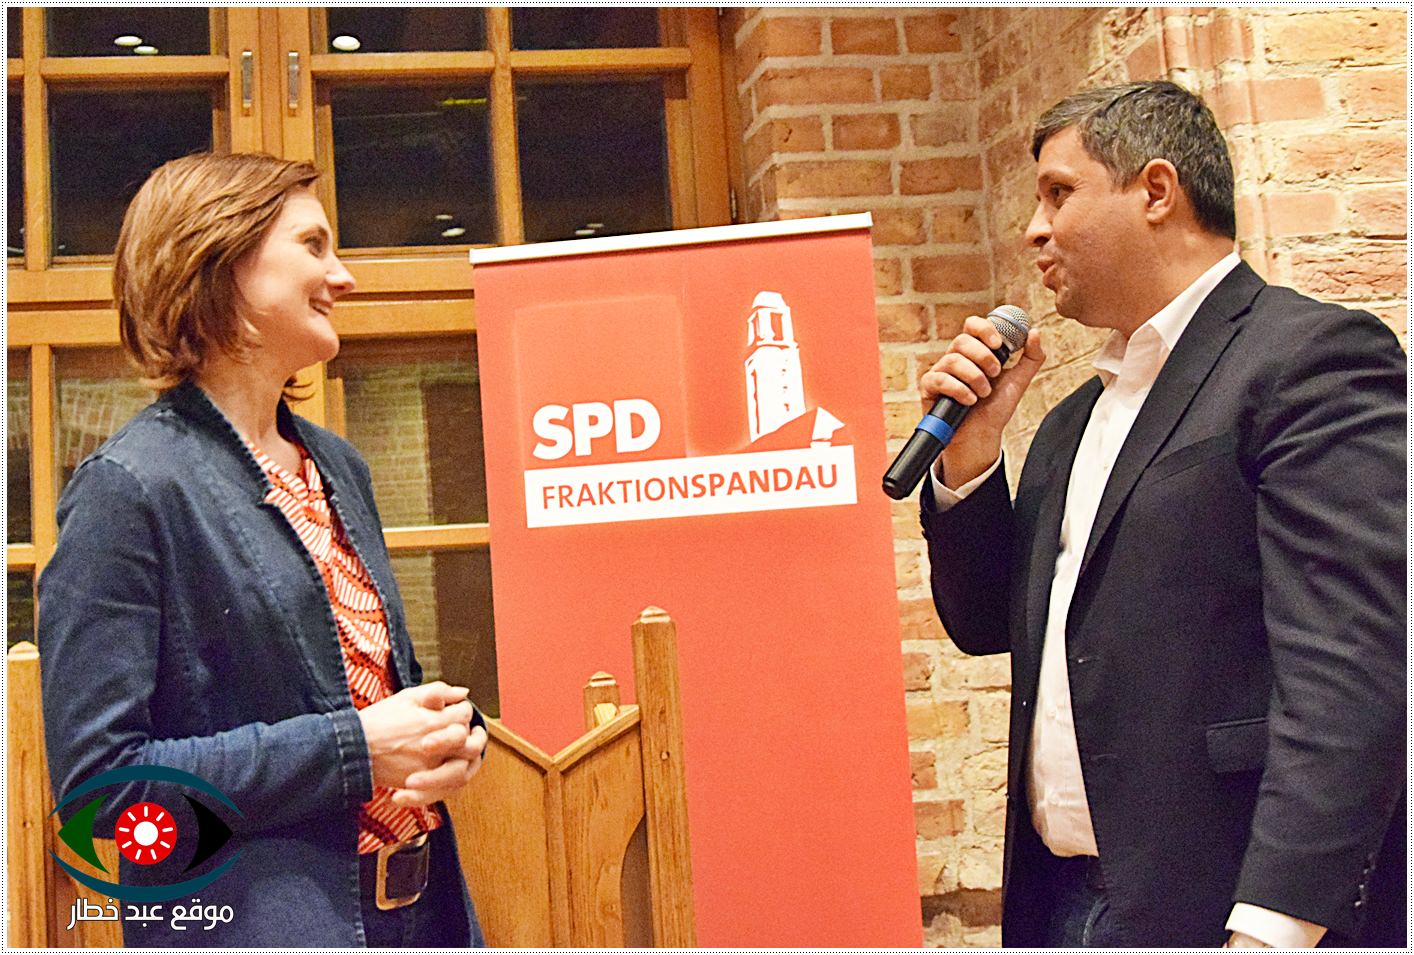 الحزب الاشتراكي الديمقراطي/ SPD في افتتاح احتفال موسم الربيع في منطقة الشبنداو في برلين